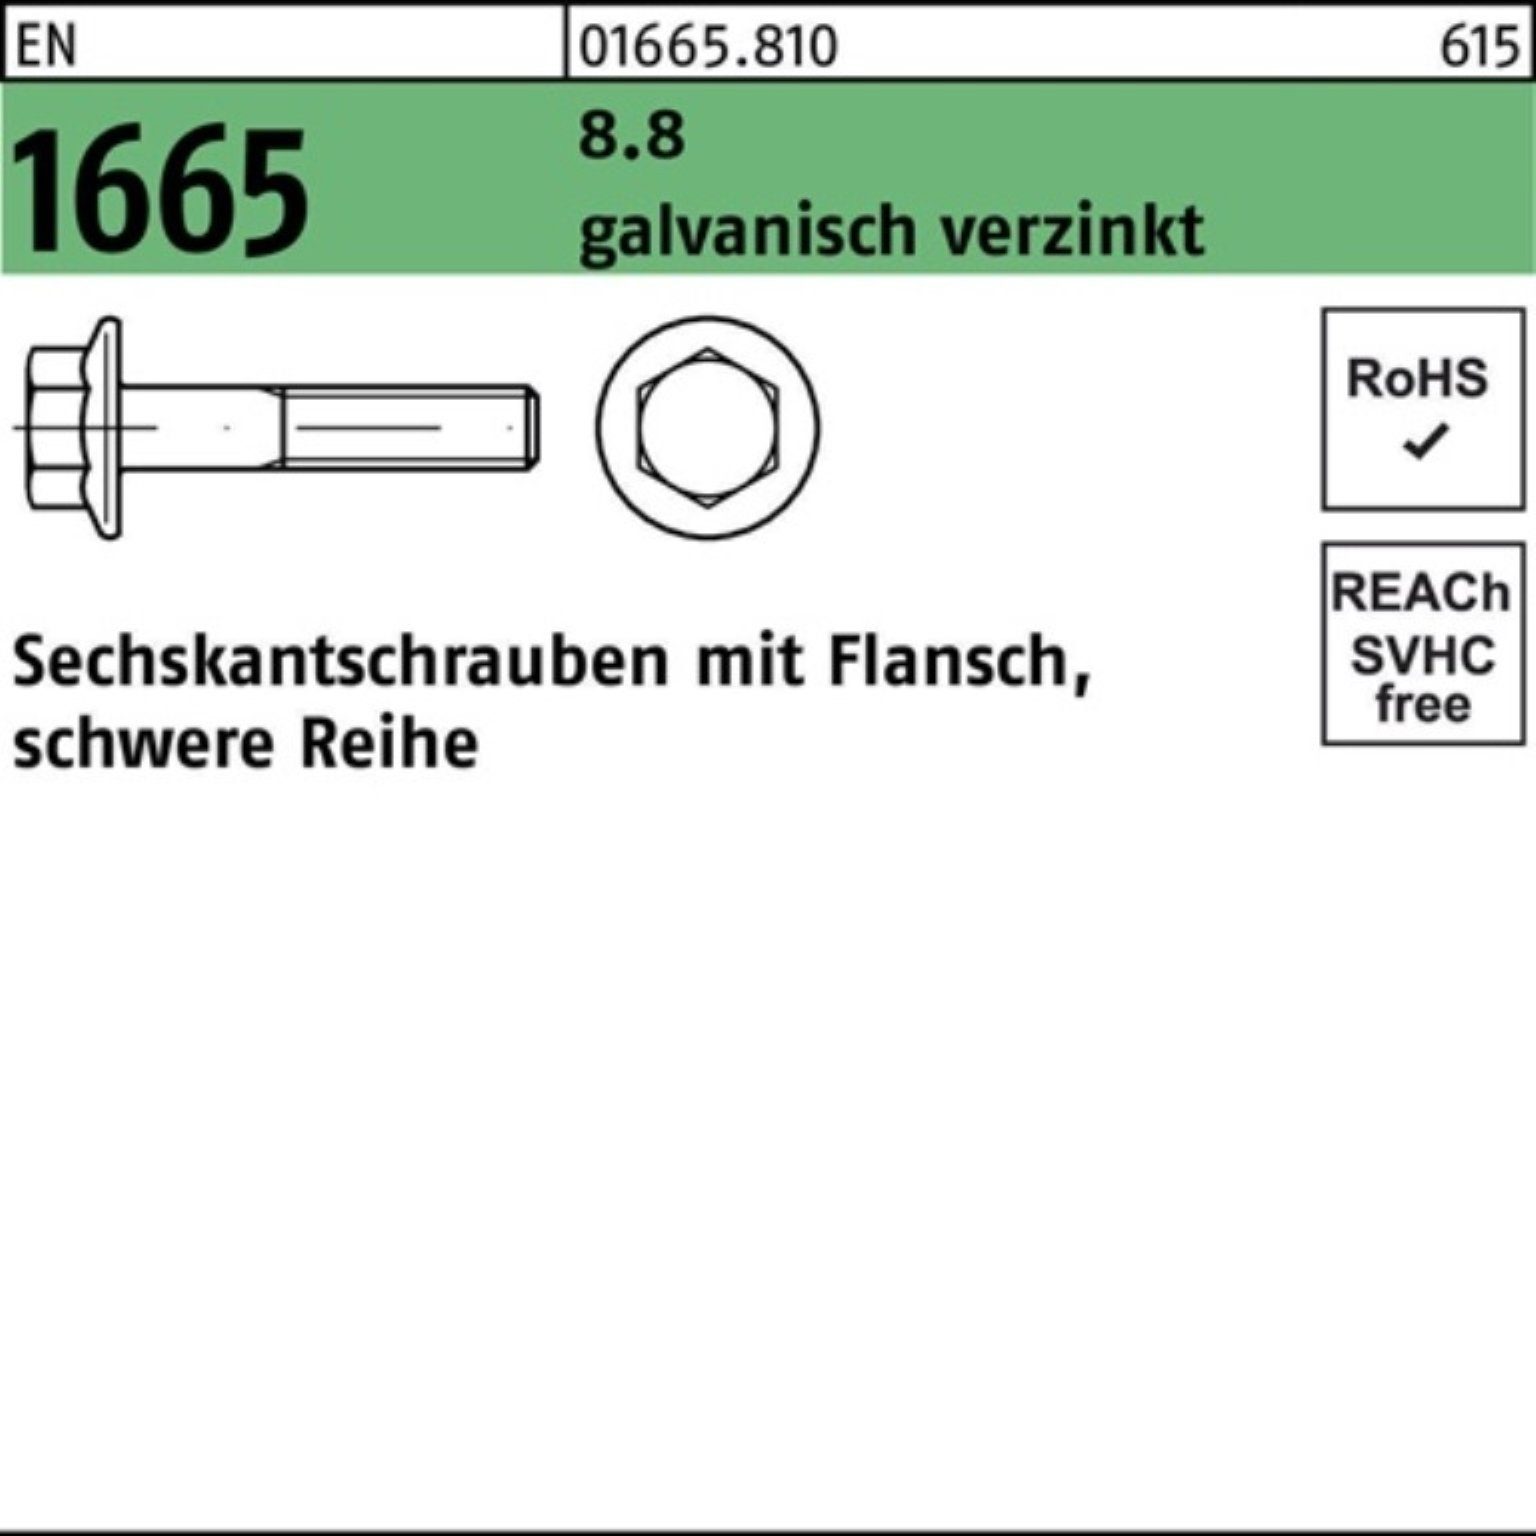 Reyher Sechskantschraube 8.8 1665 100er EN Pack Flansch M12x 45 10 Sechskantschraube galv.verz.